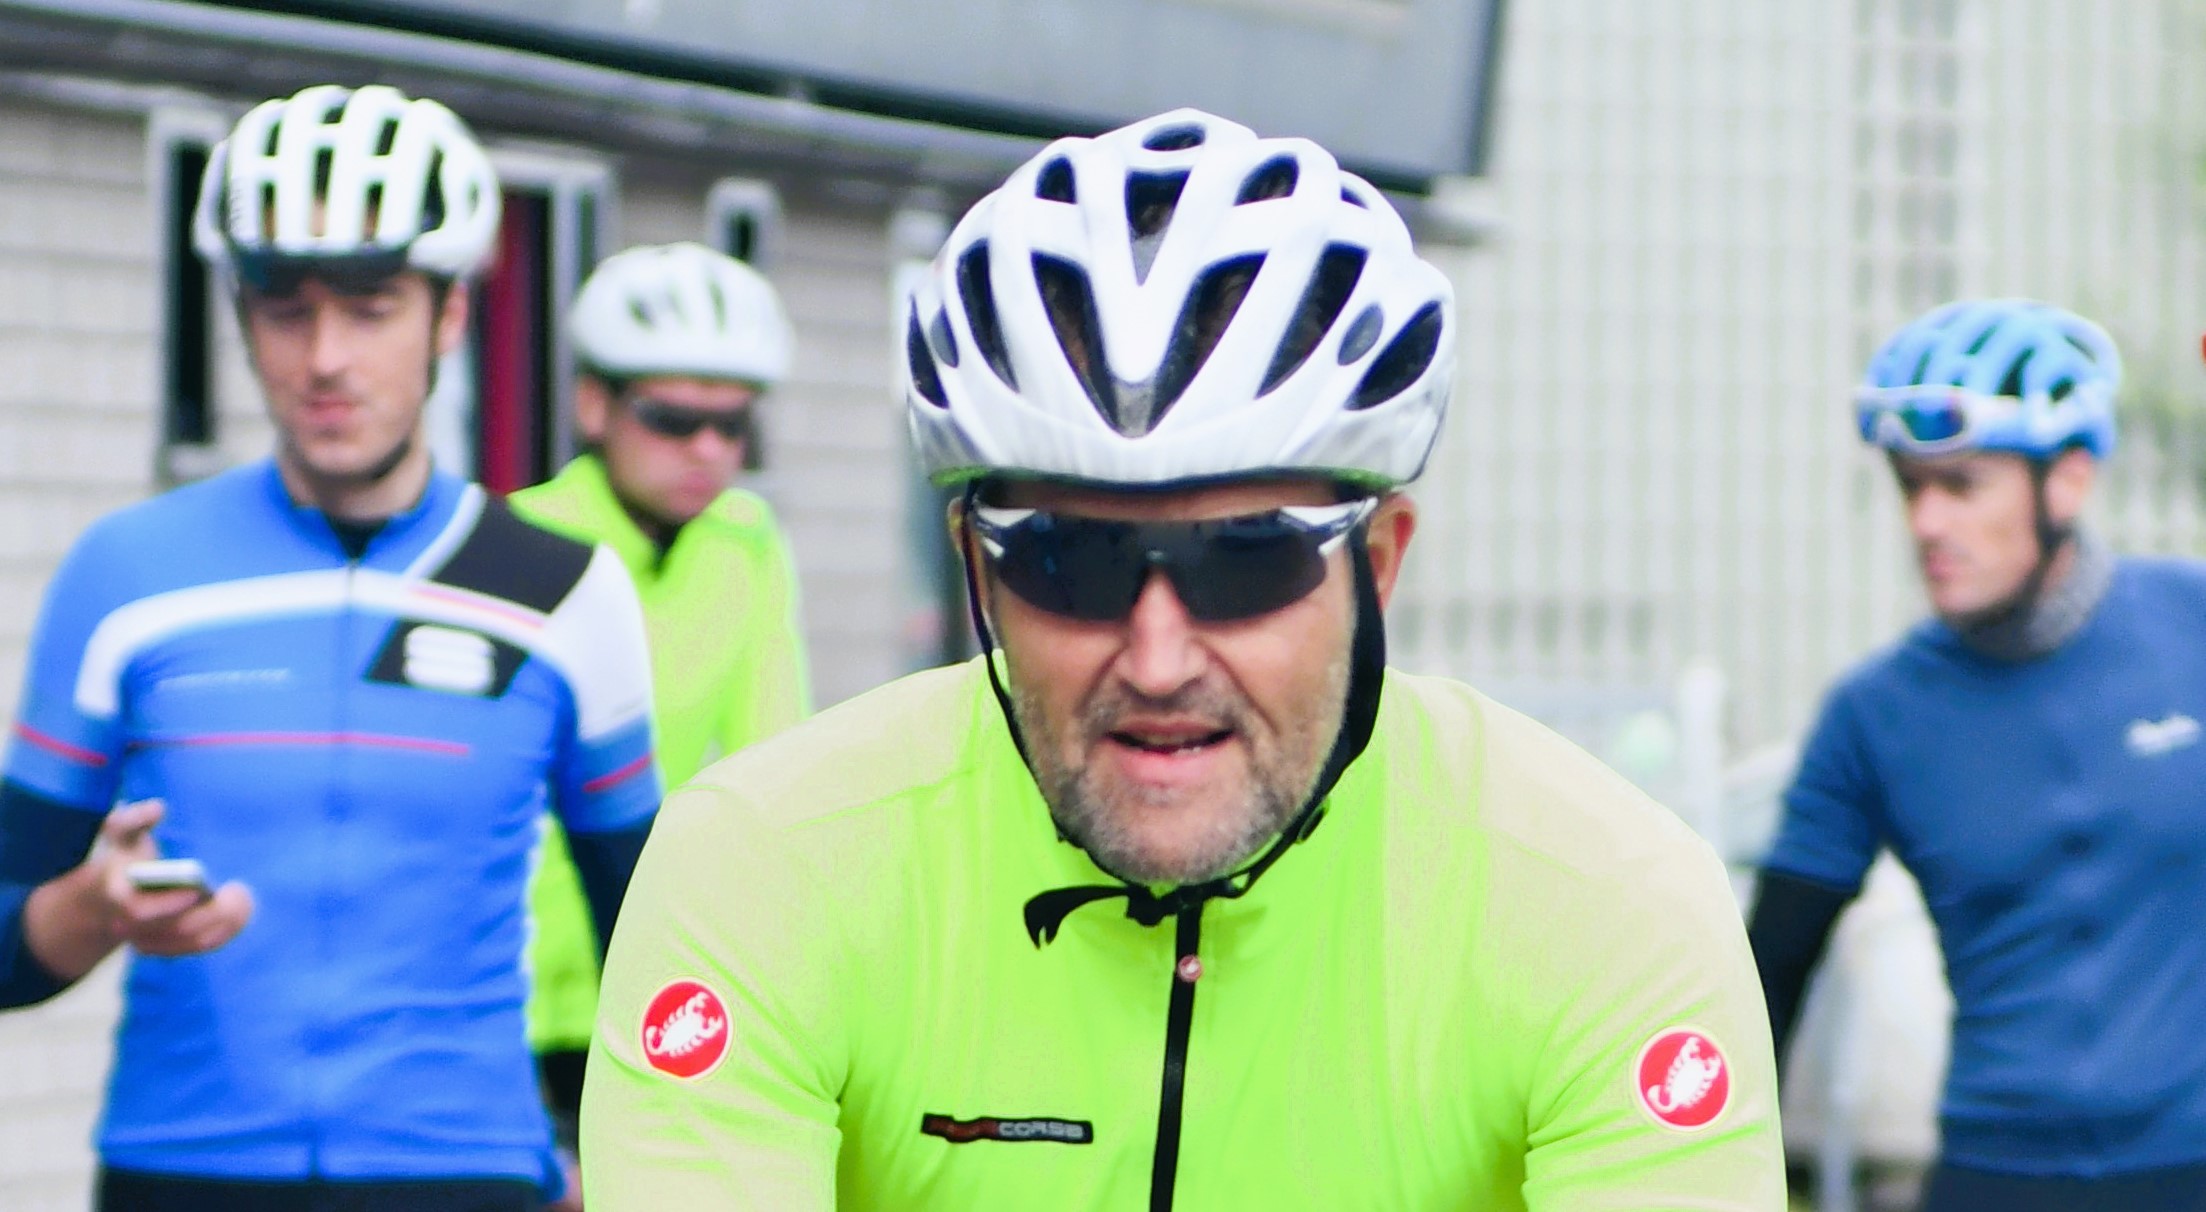 Henk fietst voor de MAF (Henk is cycling for the MAF)